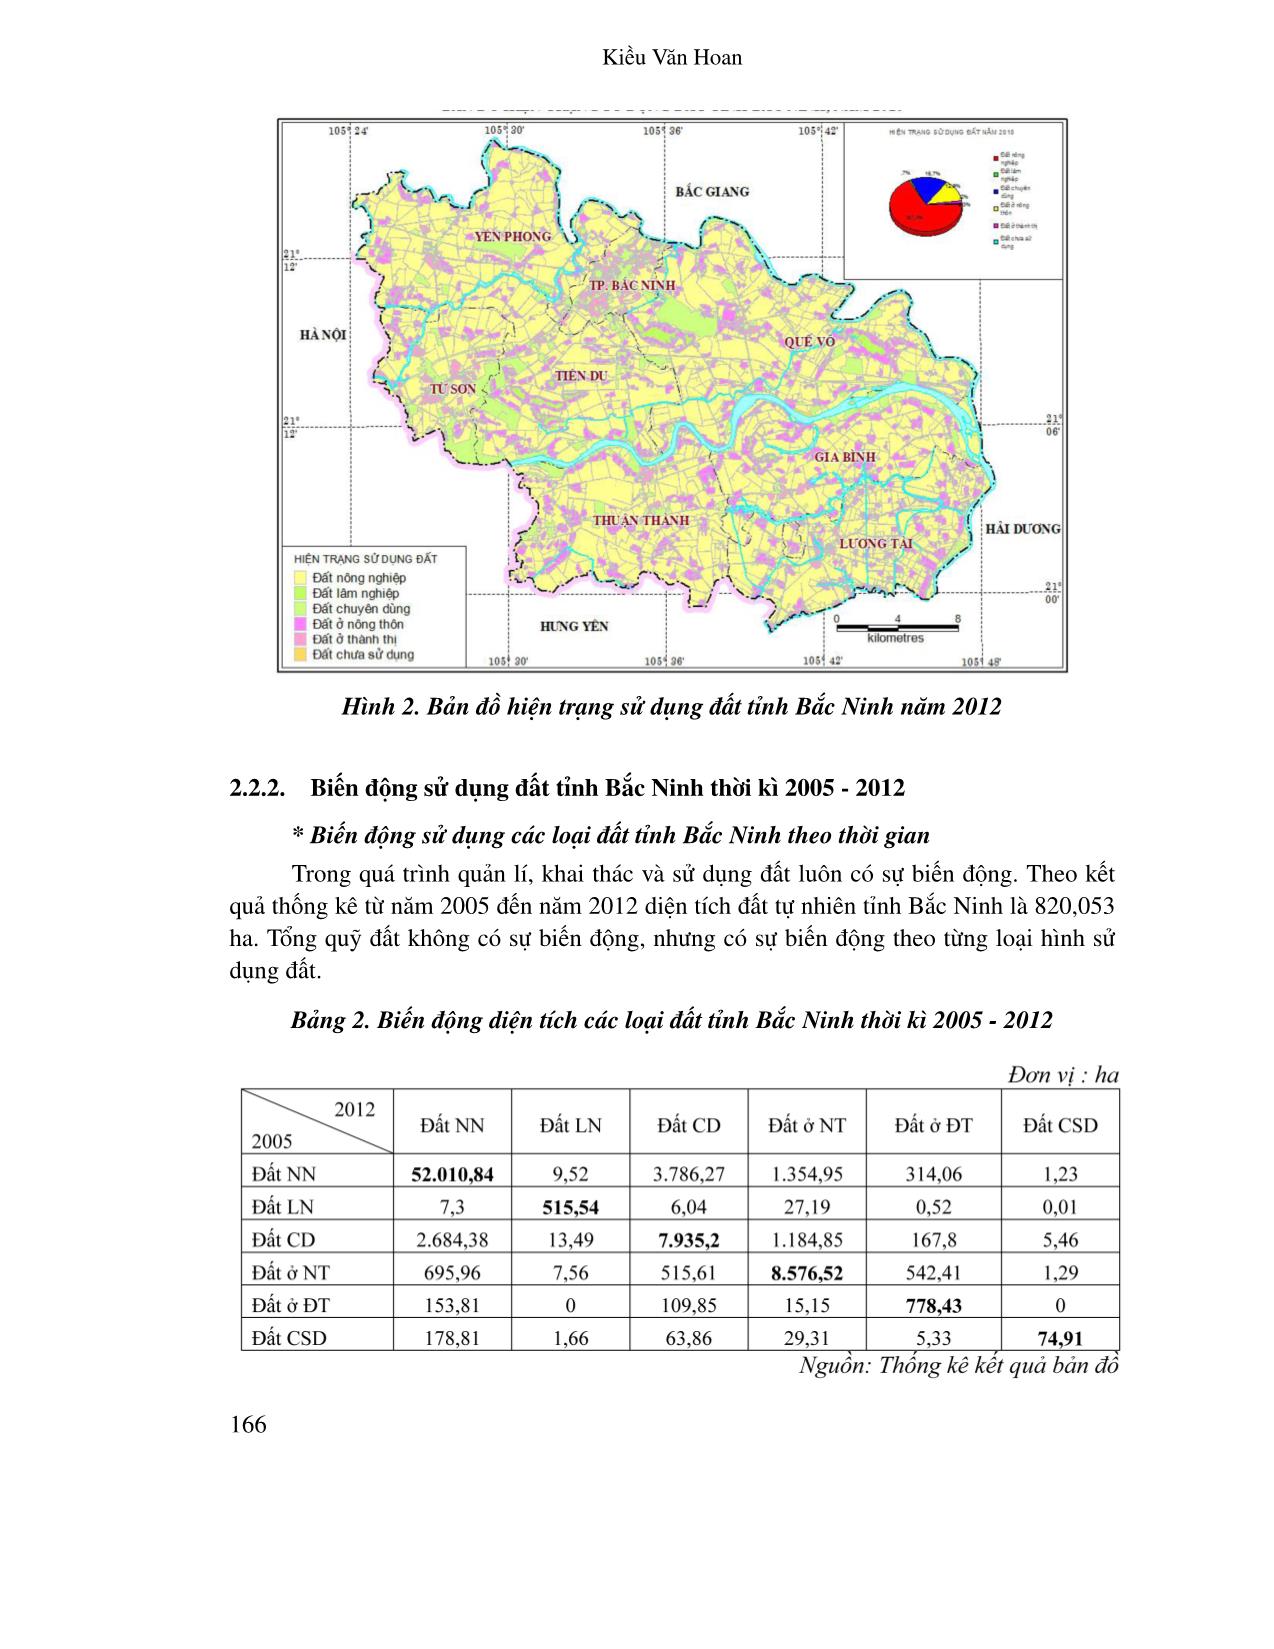 Ứng dụng hệ thống thông tin Địa lí đánh giá biến động sử dụng đất tỉnh Bắc Ninh thời kỳ 2005 - 2012 trang 6